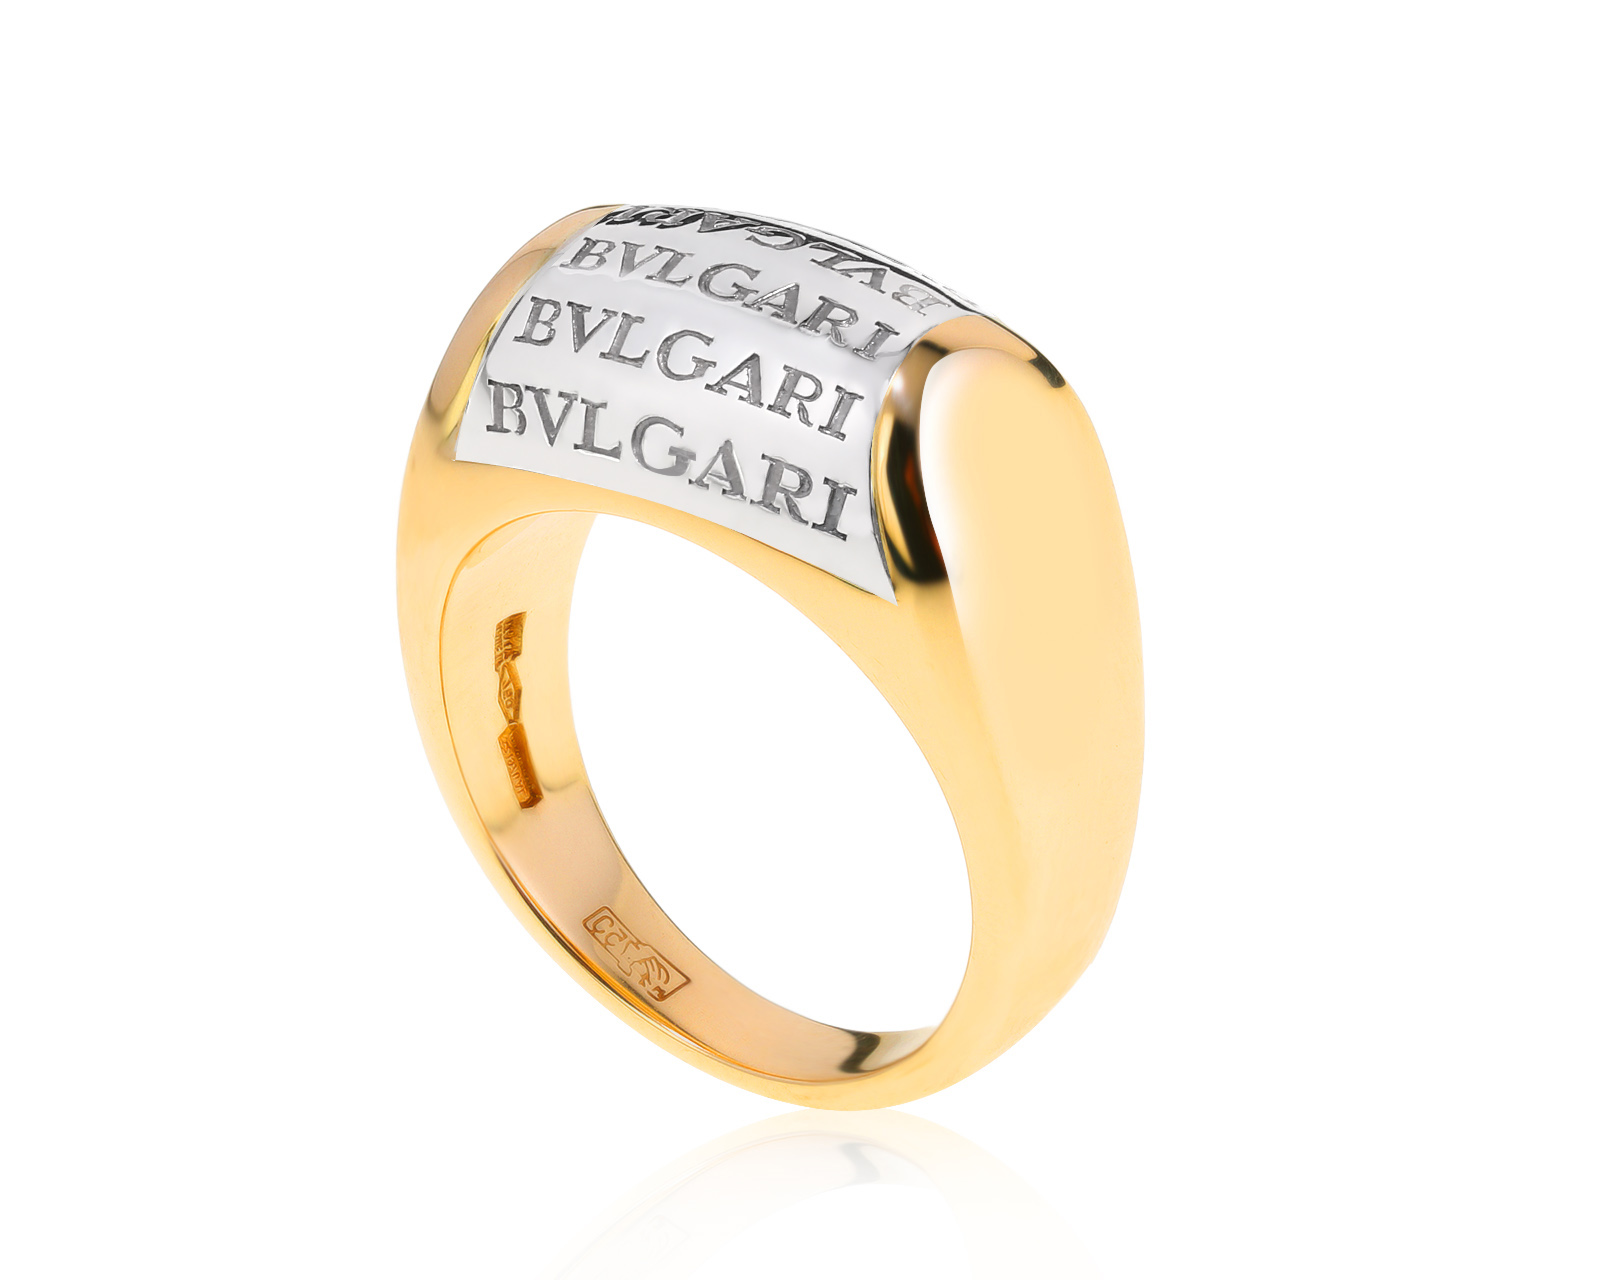 Оригинальное золотое кольцо Bvlgari Tronchetto 290122/2